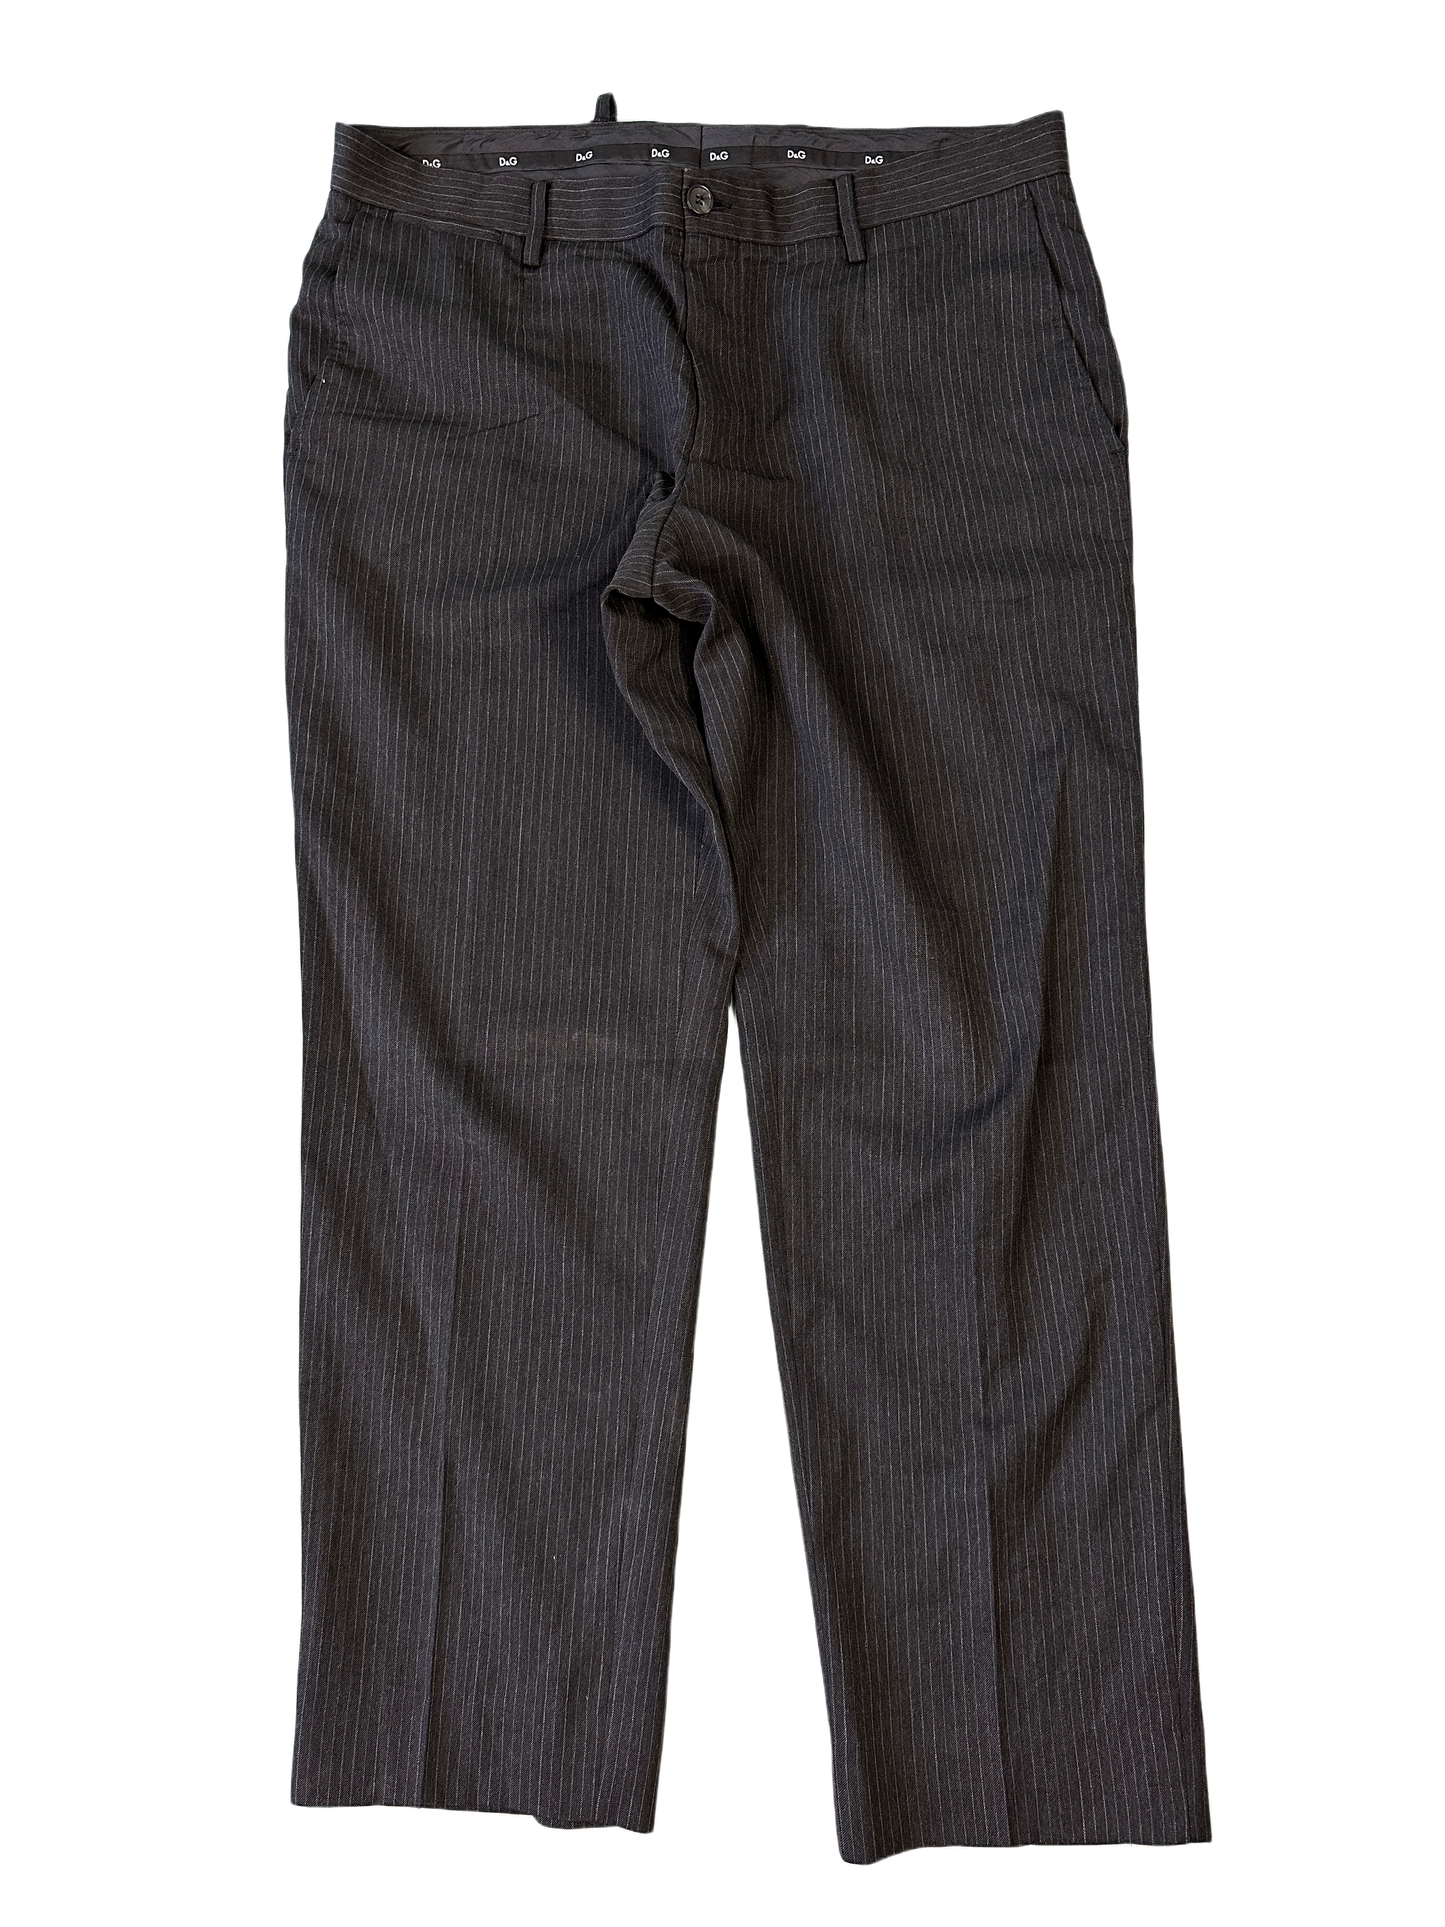 Dolce & Gabbana Pin Stripe Pants - 38